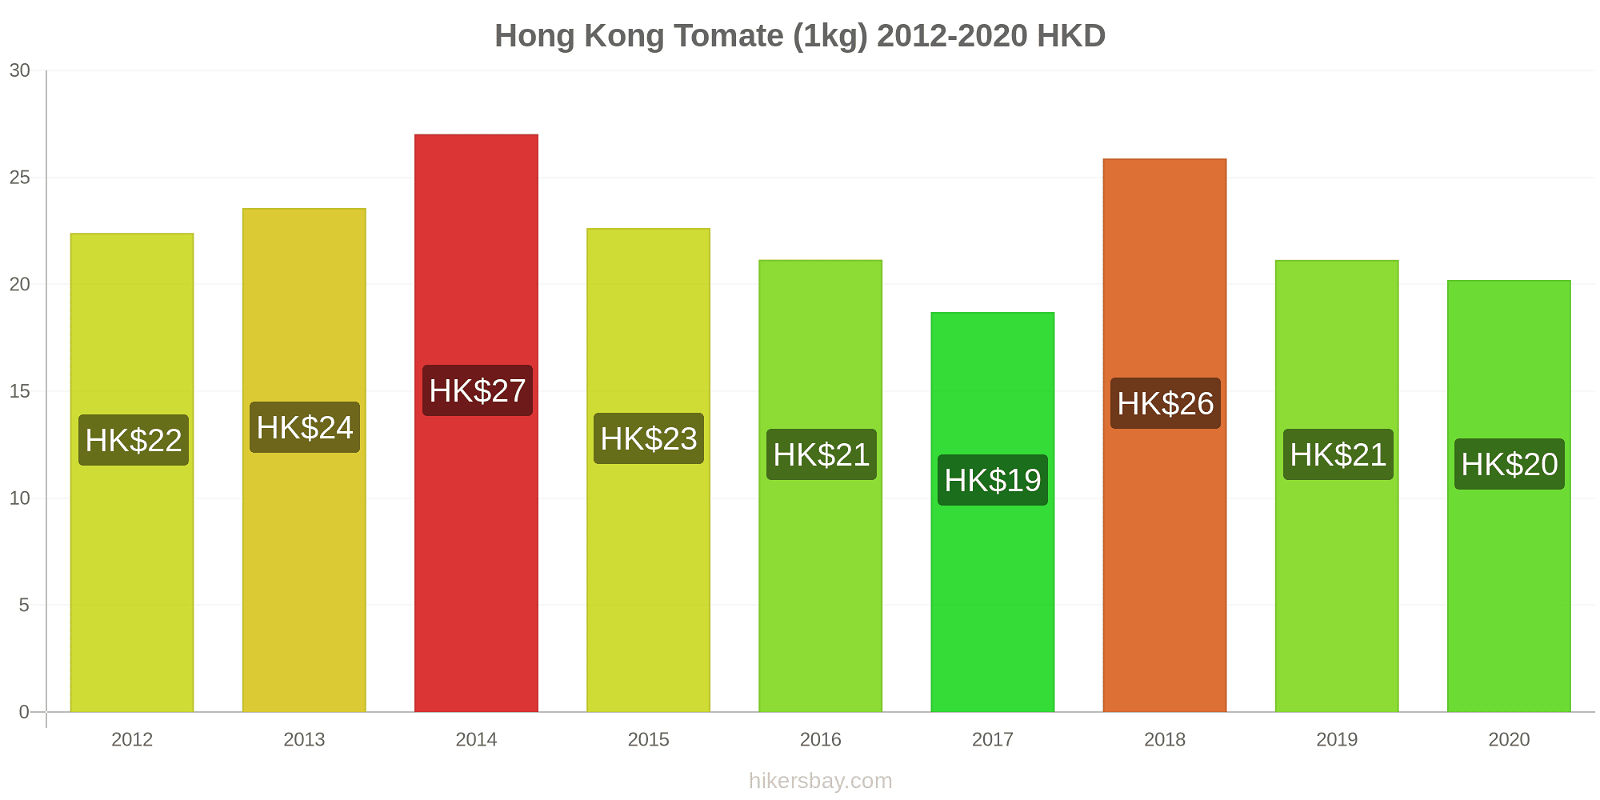 Hong Kong modificări de preț Tomate (1kg) hikersbay.com